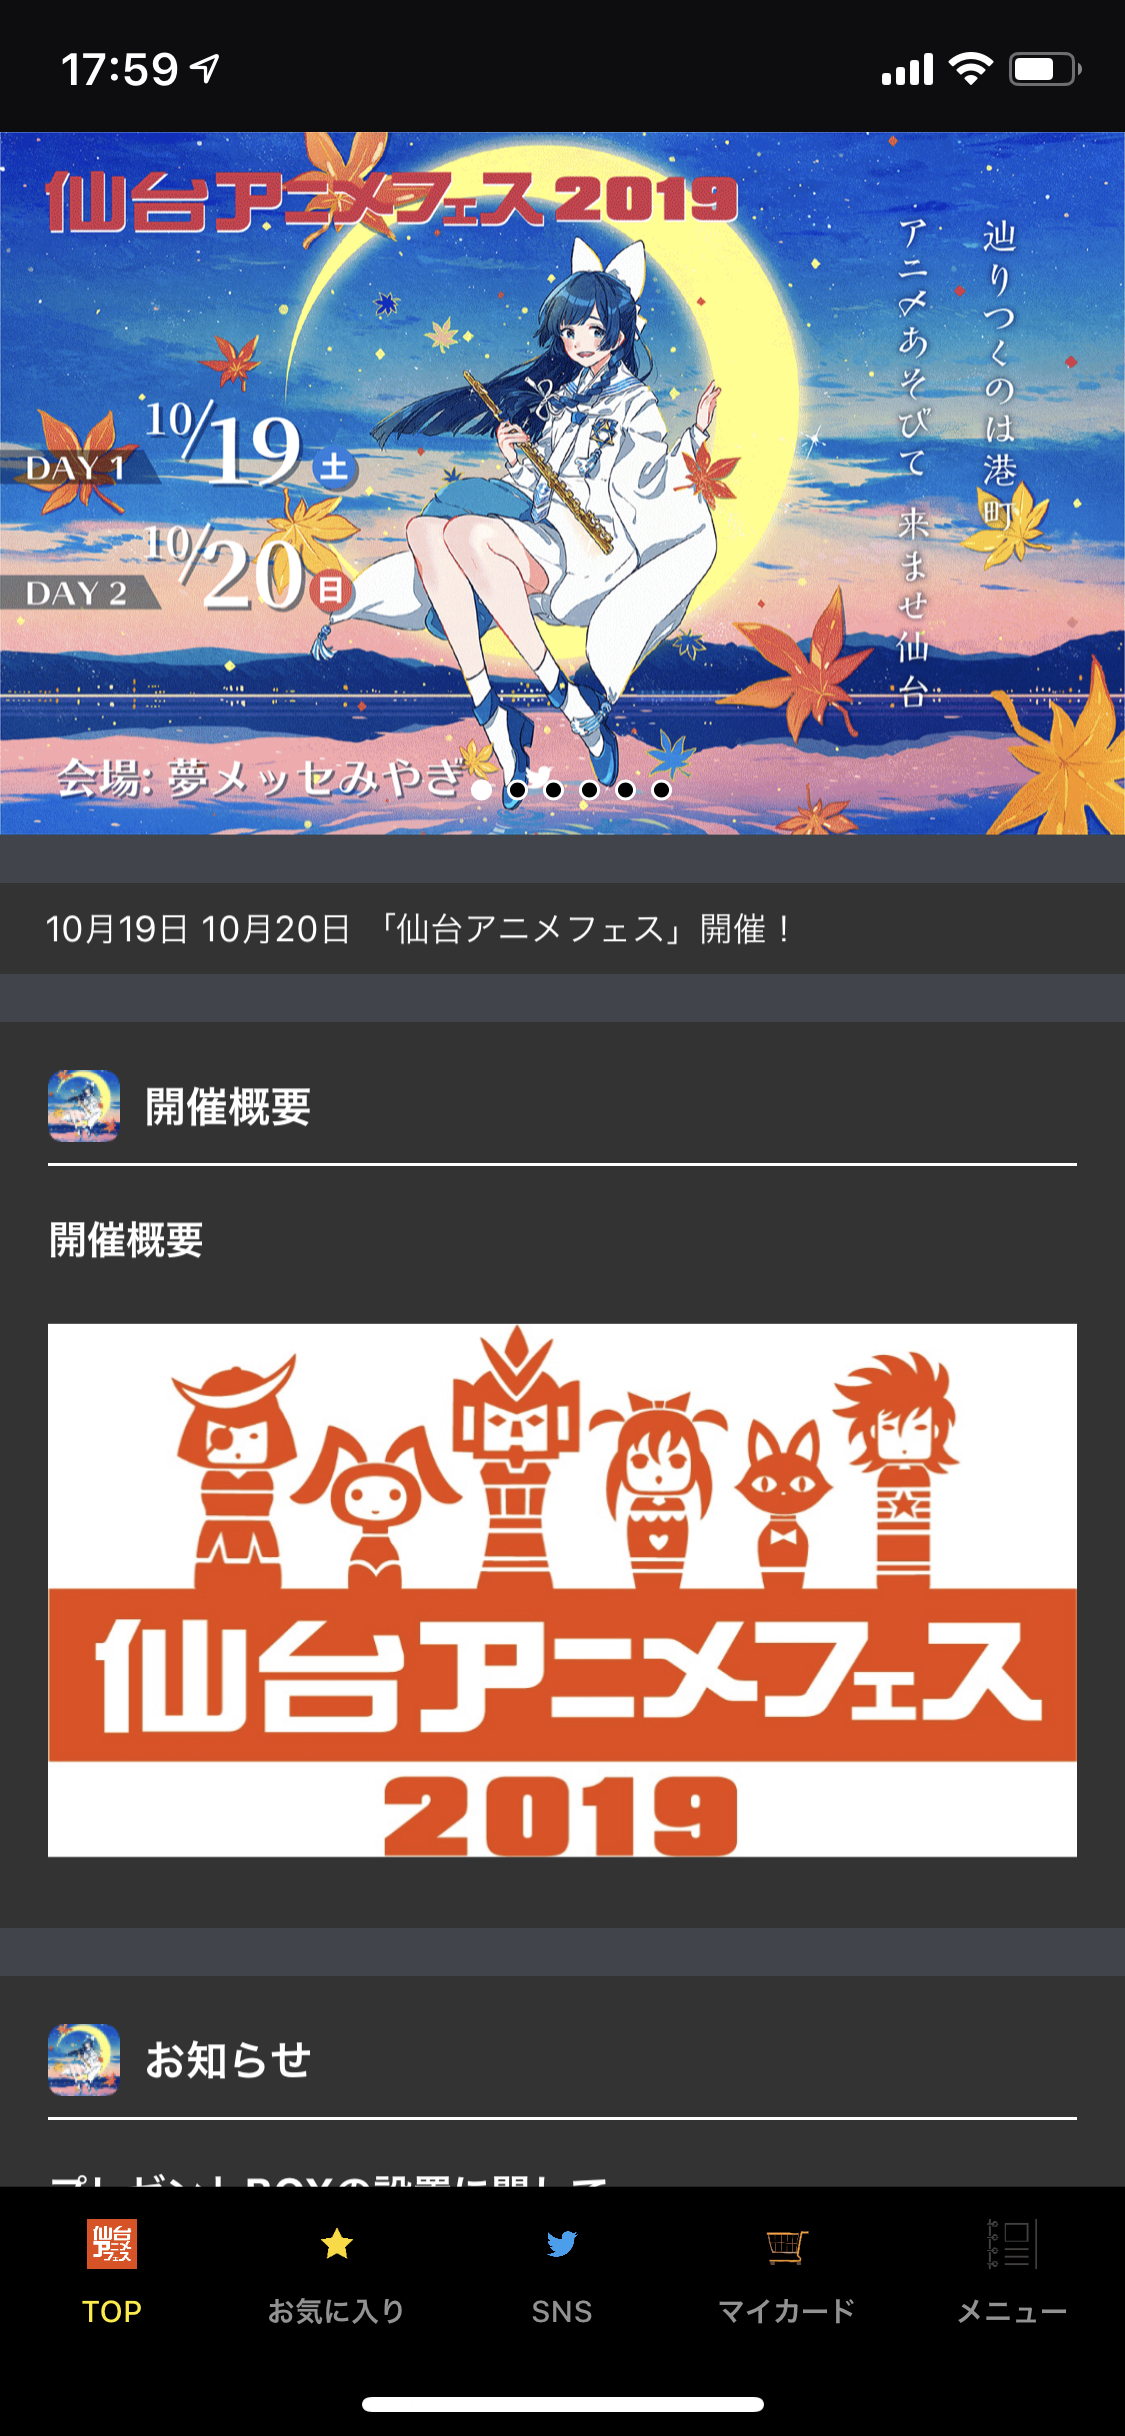 仙台アニメフェス19 公式アプリとしてeventosが採用 Brave One